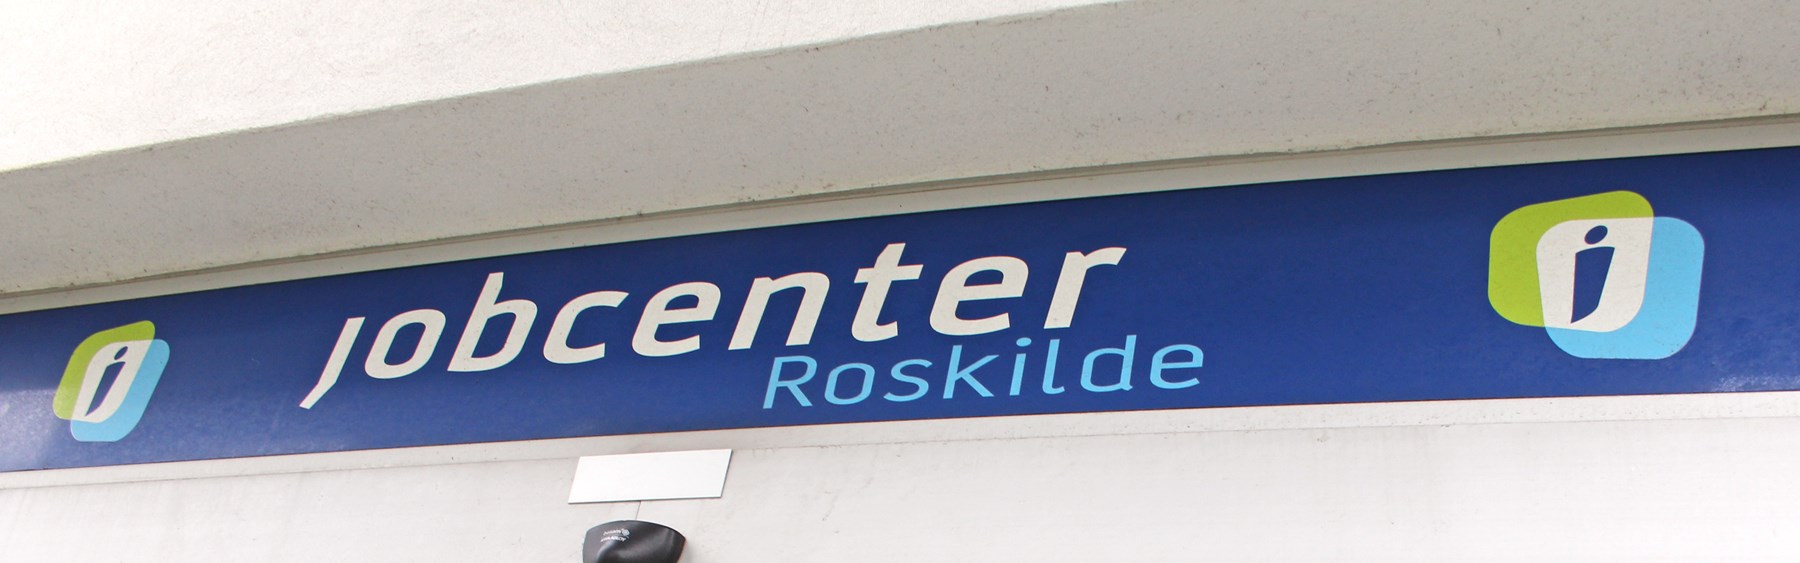 Jobcenter Roskildes indgangsparti. Skilt med teksten "Jobcenter Roskilde" hænger i midten af billedet.